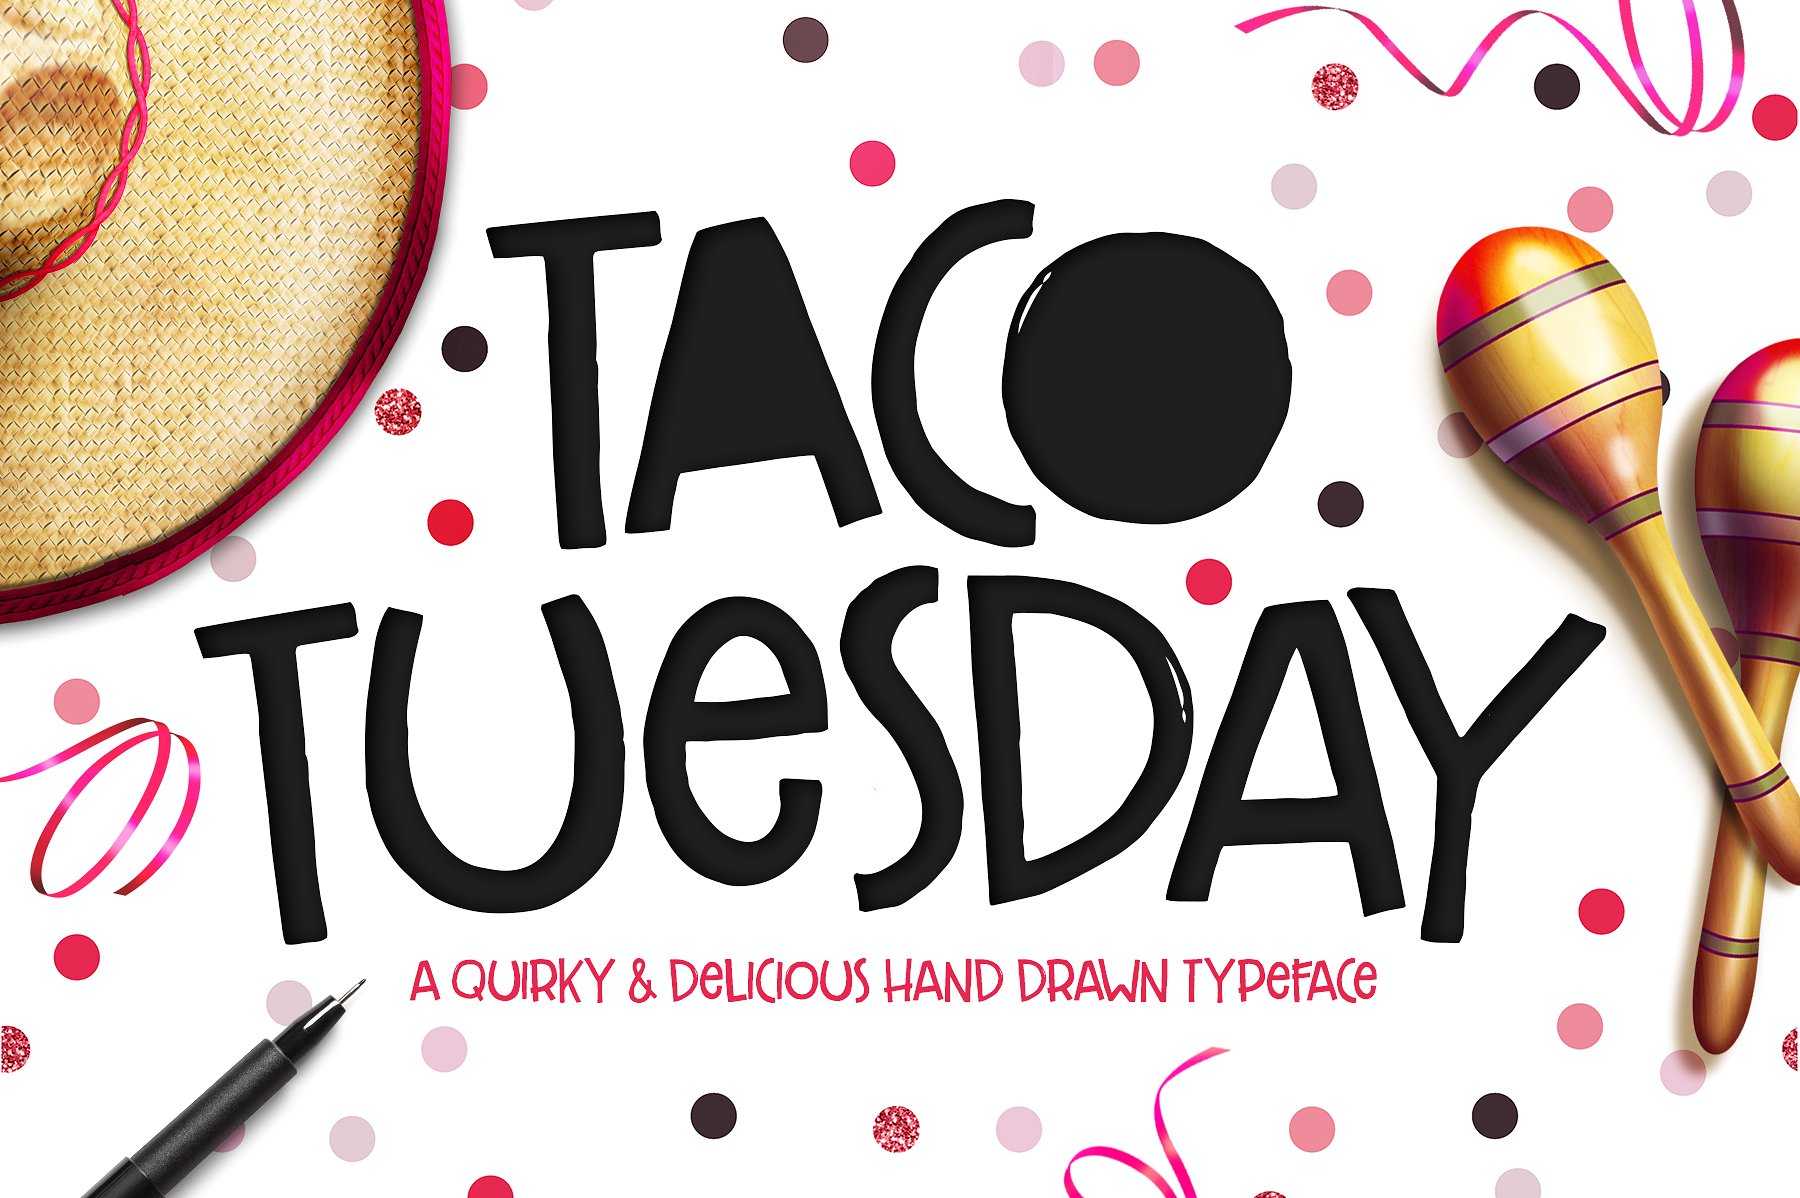 可爱的手绘字体Taco Tuesday Typeface #